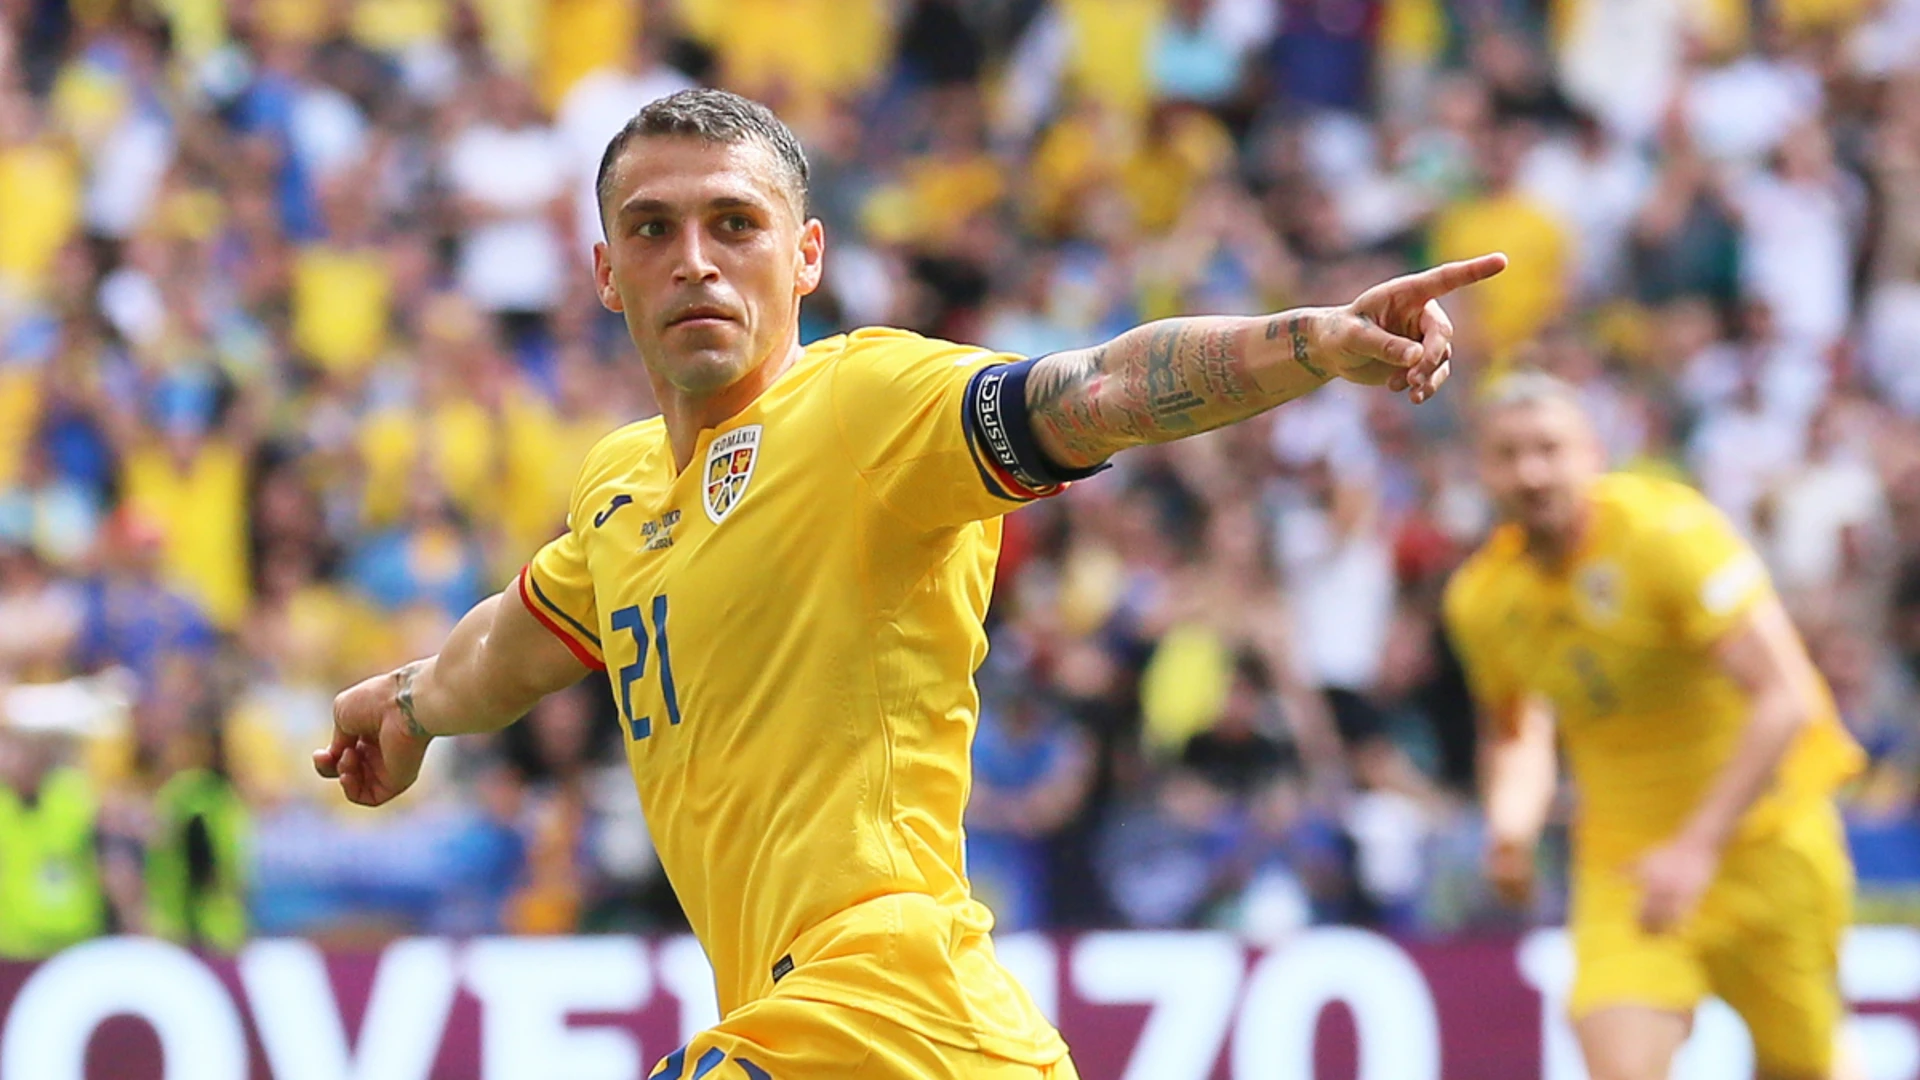 Romania stun Ukraine with first Euro win in 24 years